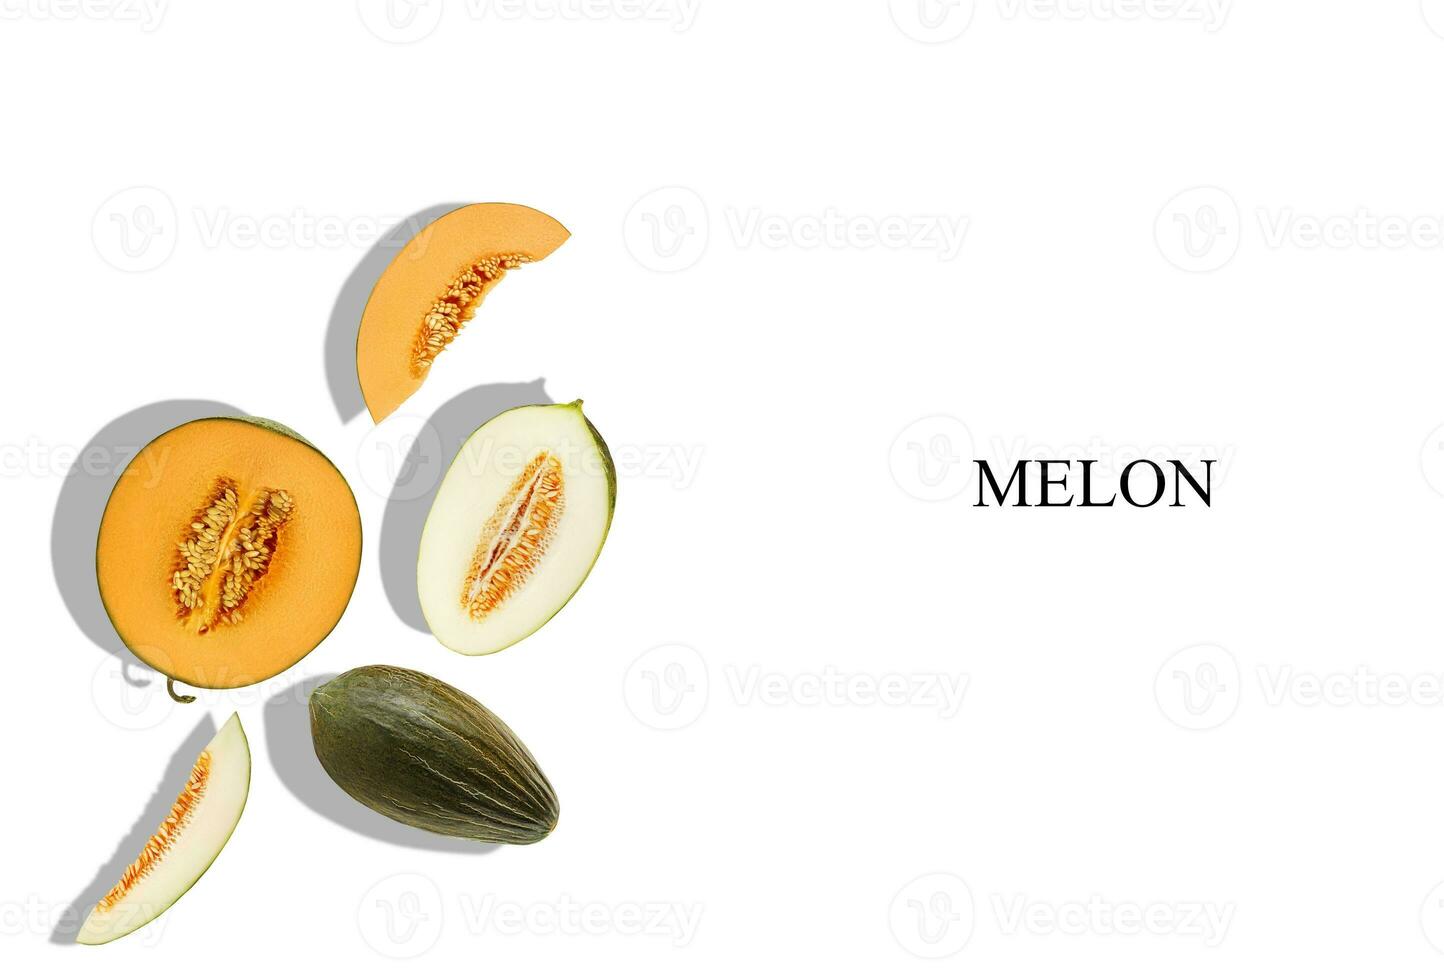 meloner av annorlunda olika sorter, hela, halvor och skivor, isolerat på vit med inskrift melon och kopia Plats för text, bilder. närbild, topp se. foto